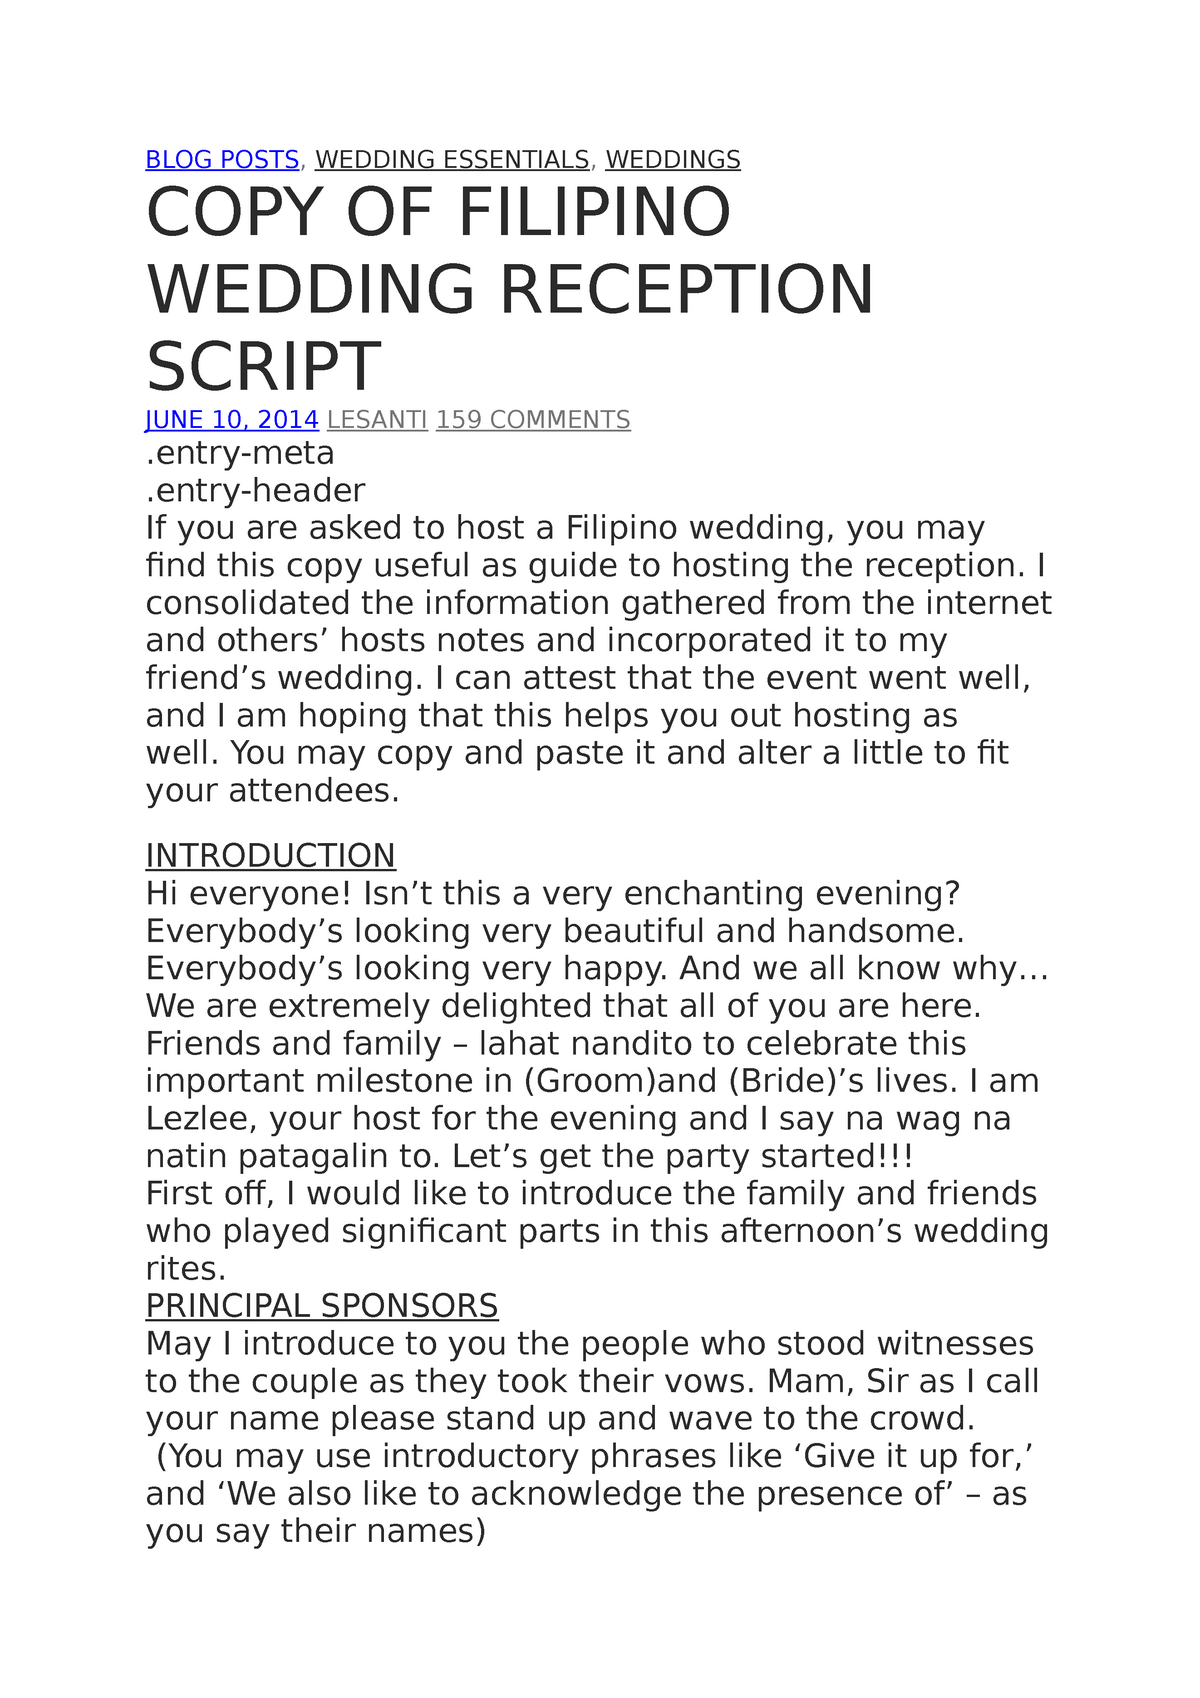 wedding reception script for emcee pdf